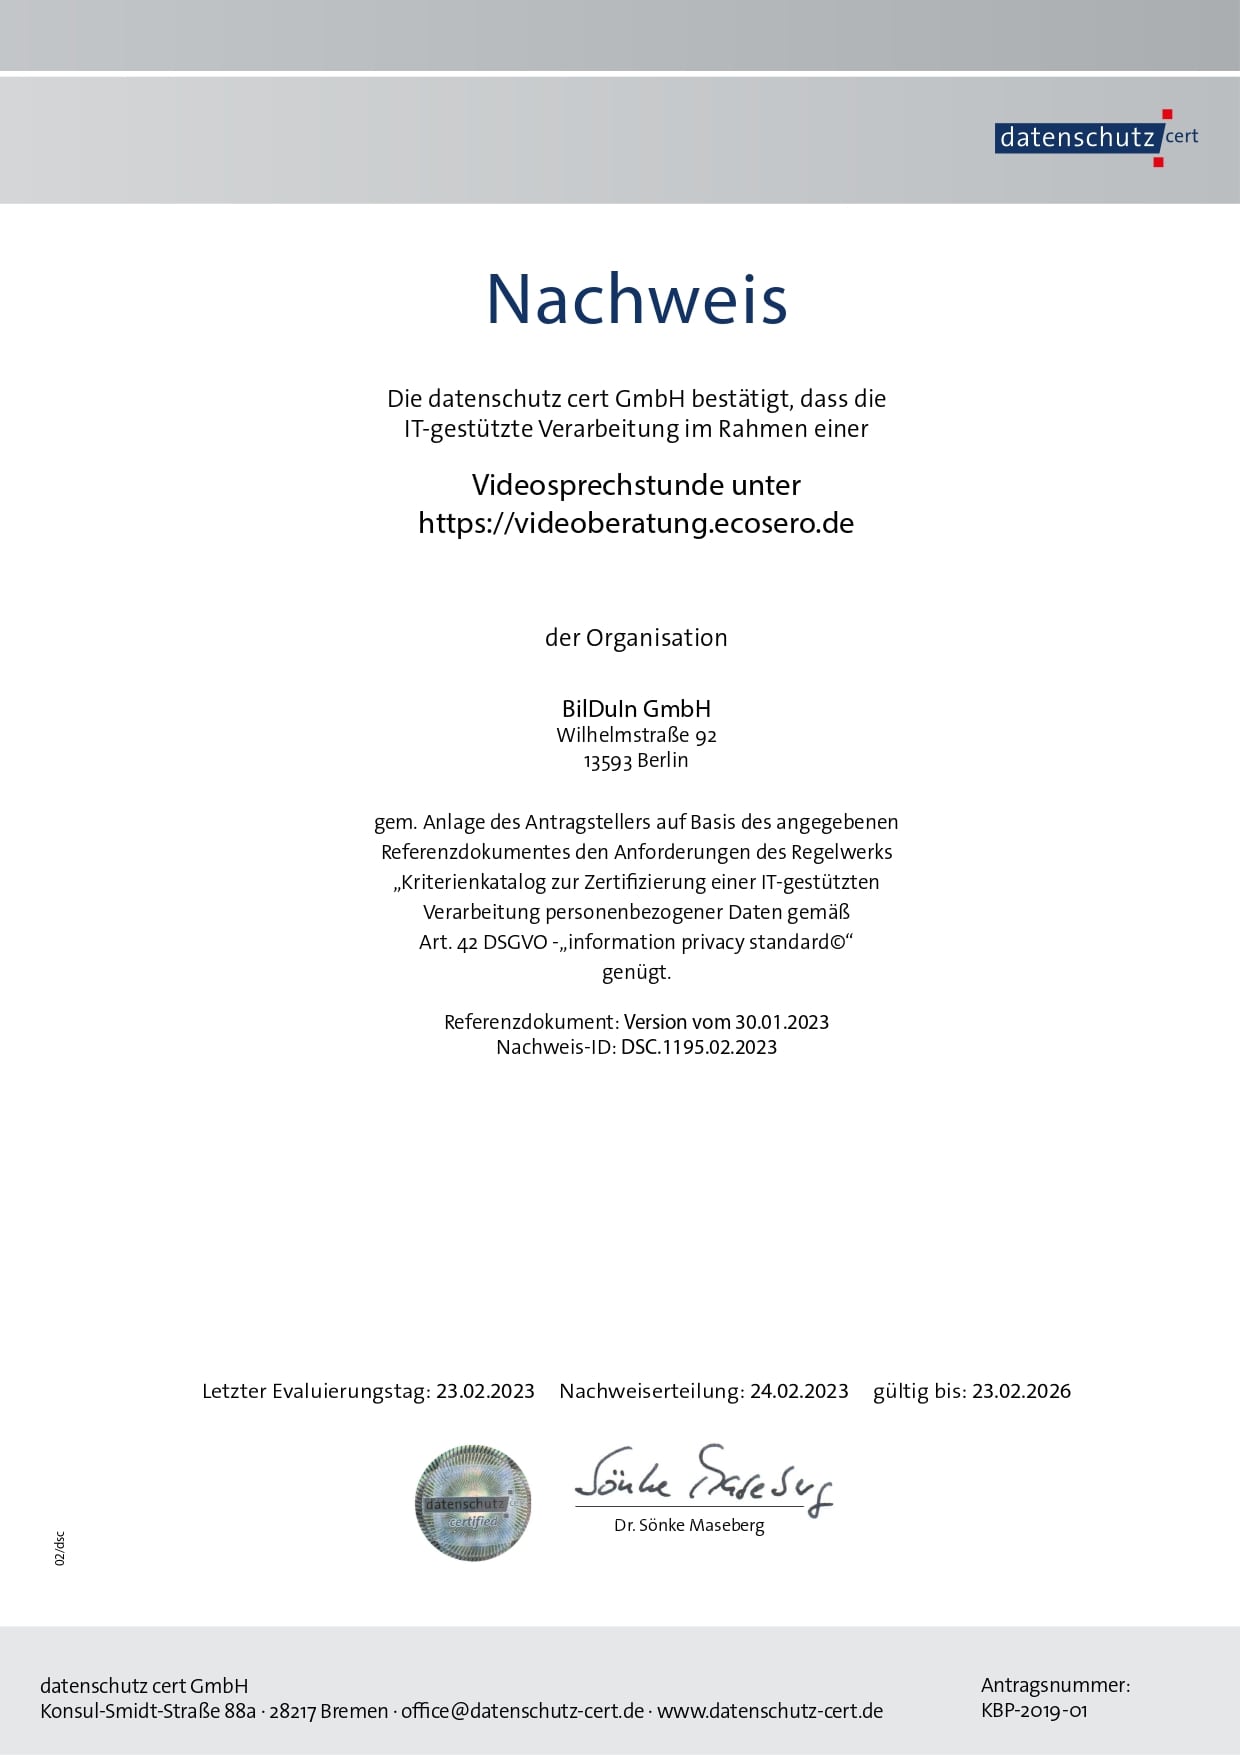 Nachweis DSGVO datenschutz cert GmbH